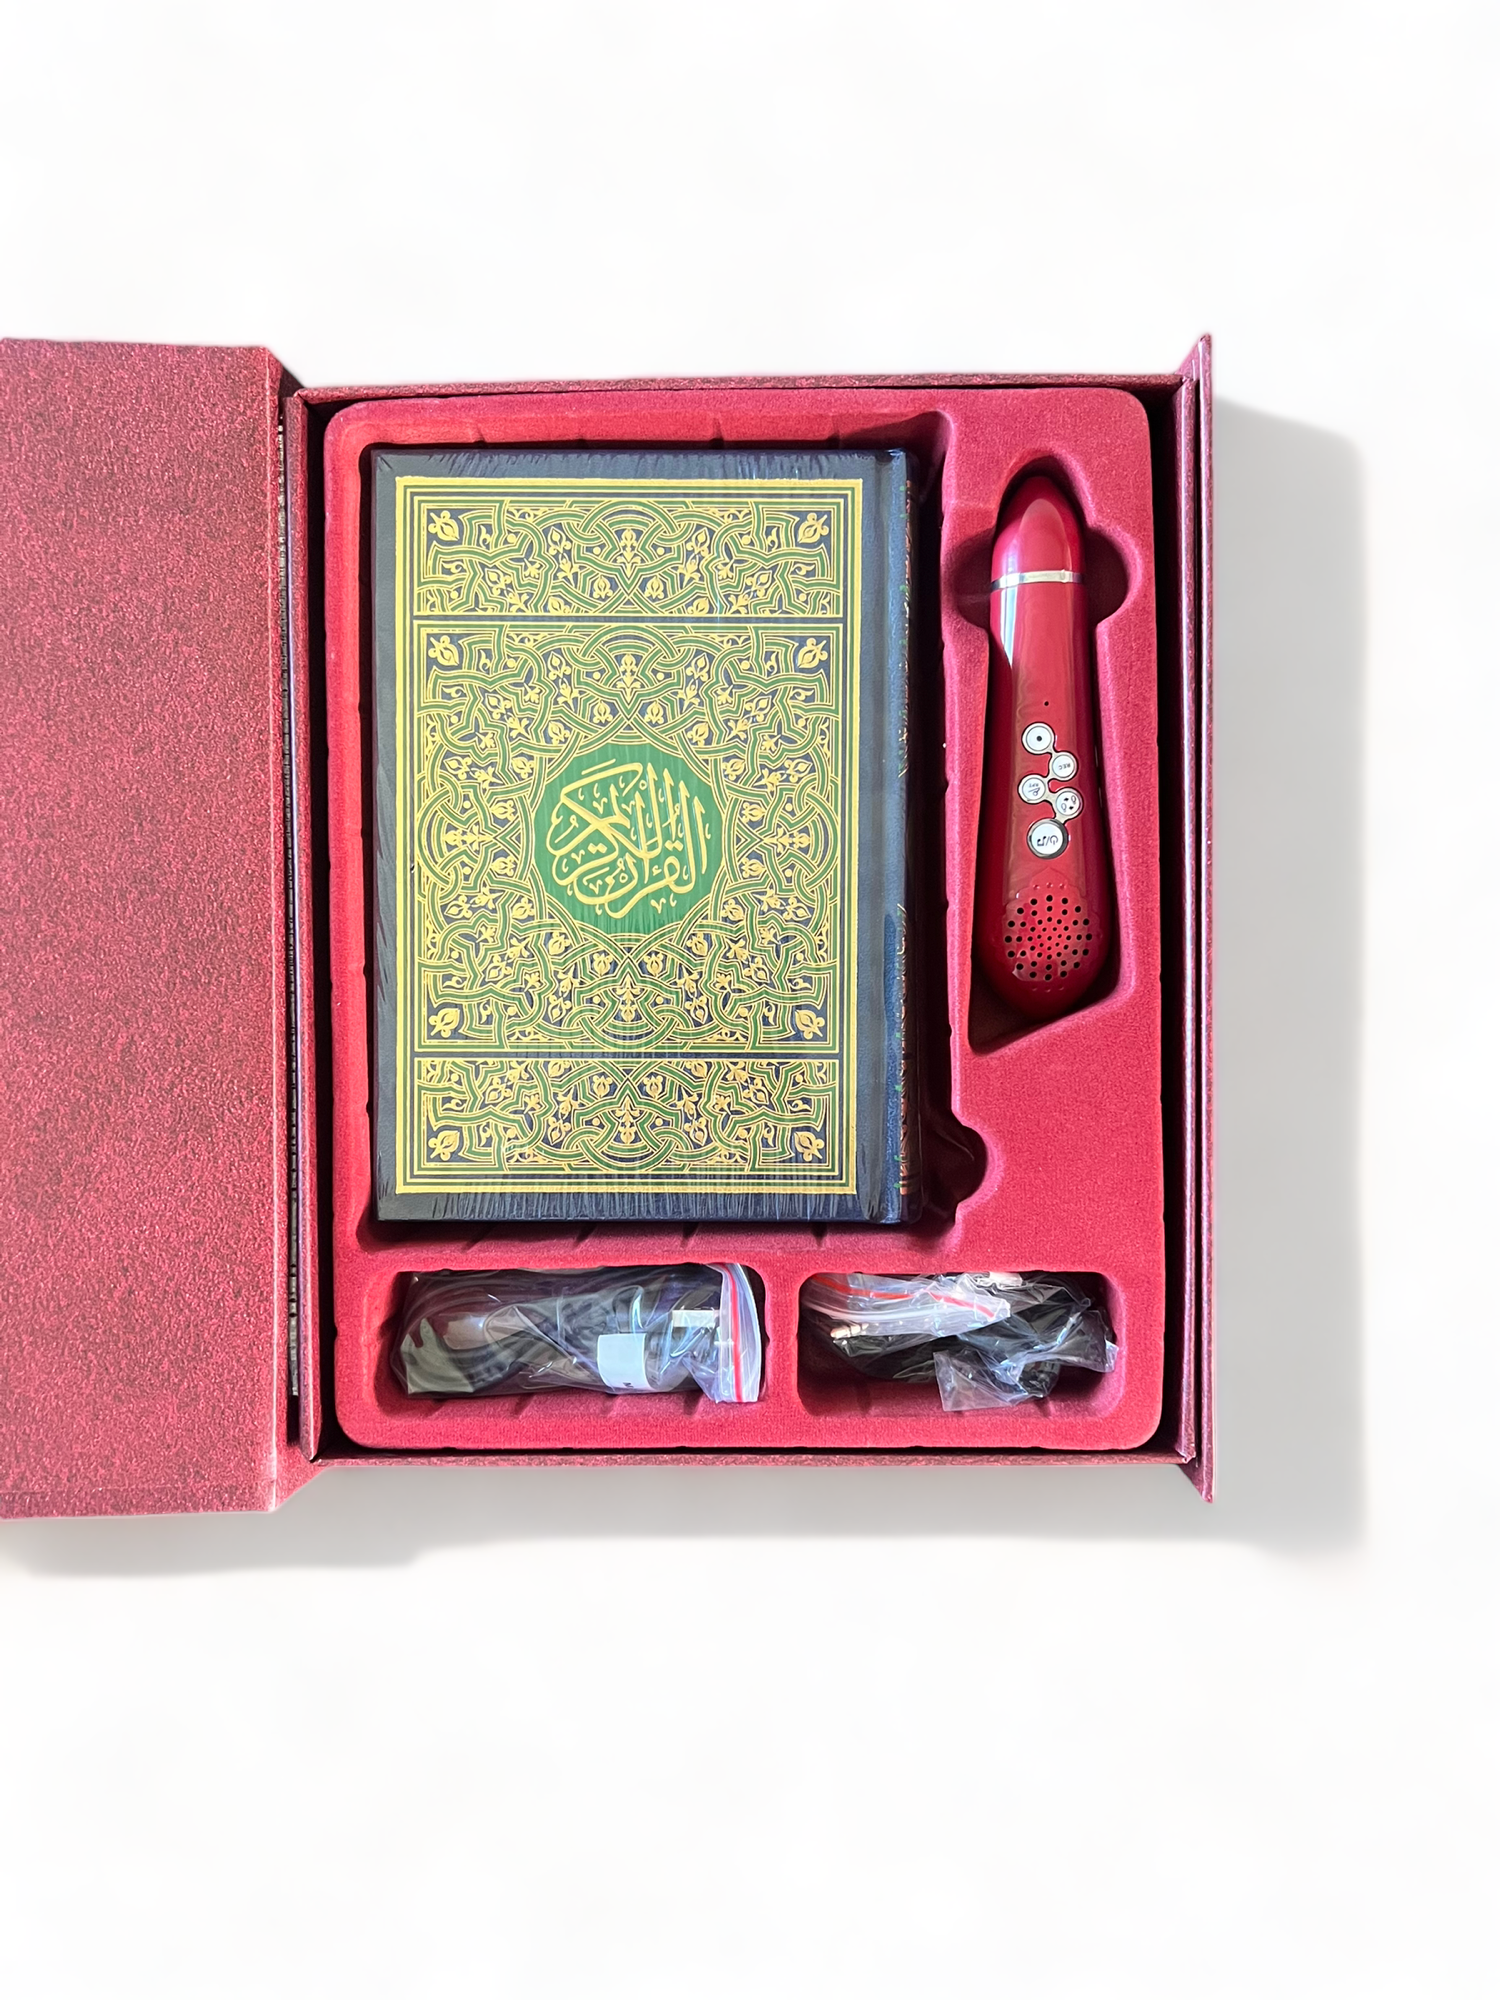 Koran mit elektronischem Stift (8 Gb - 18 Rezitatoren) mit multifunktionalem Koran für mehrere Bücher (GROSSFORMAT)